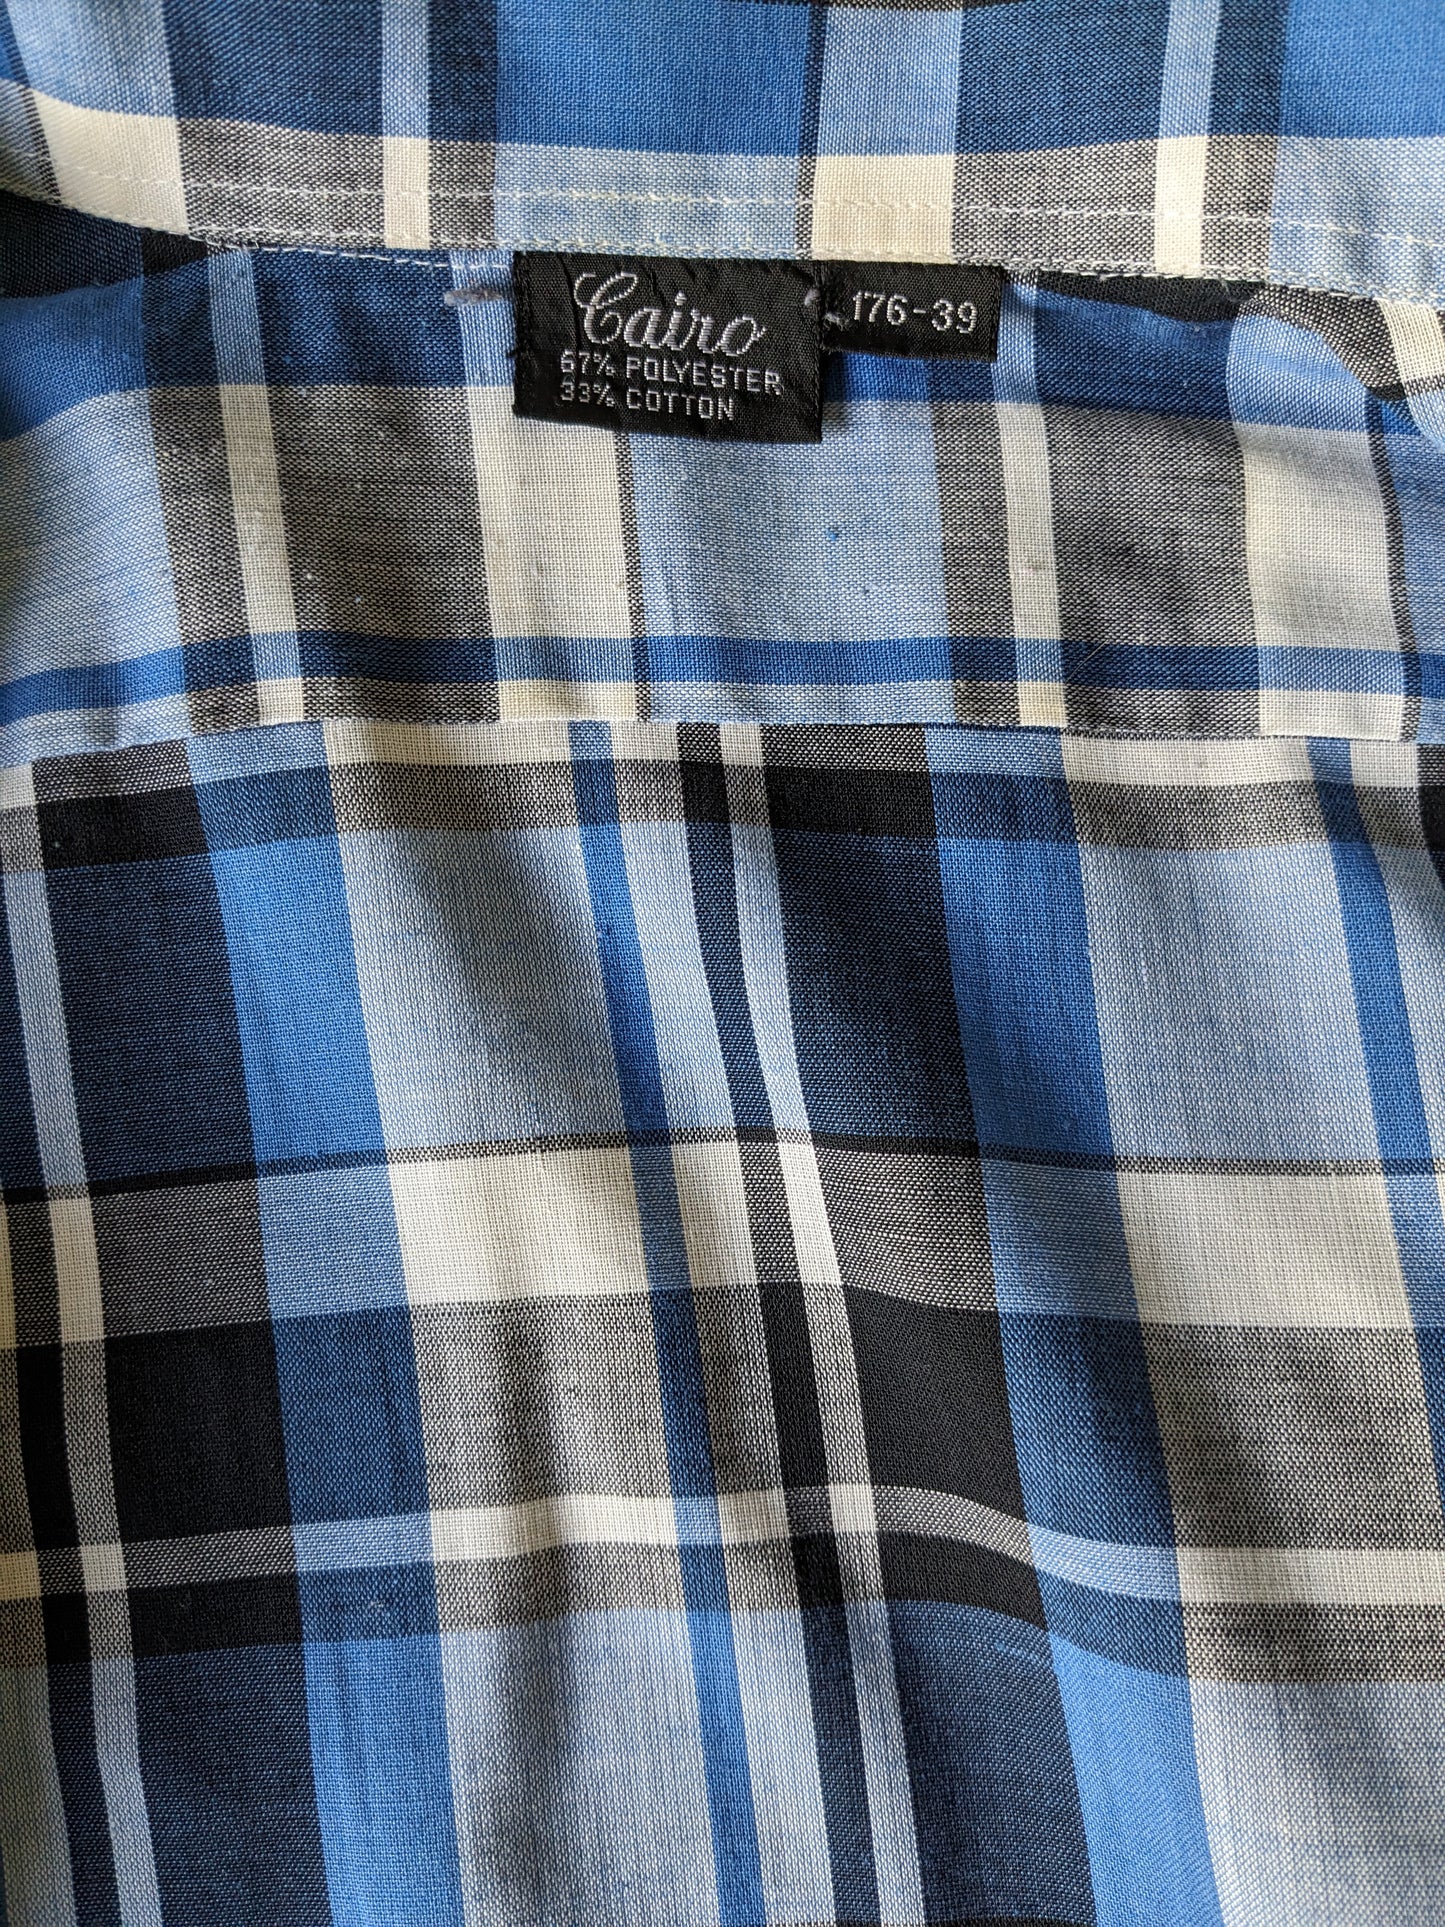 Vintage Cairo 70's overhemd. Blauw Wit Zwart geruit. Maat M.